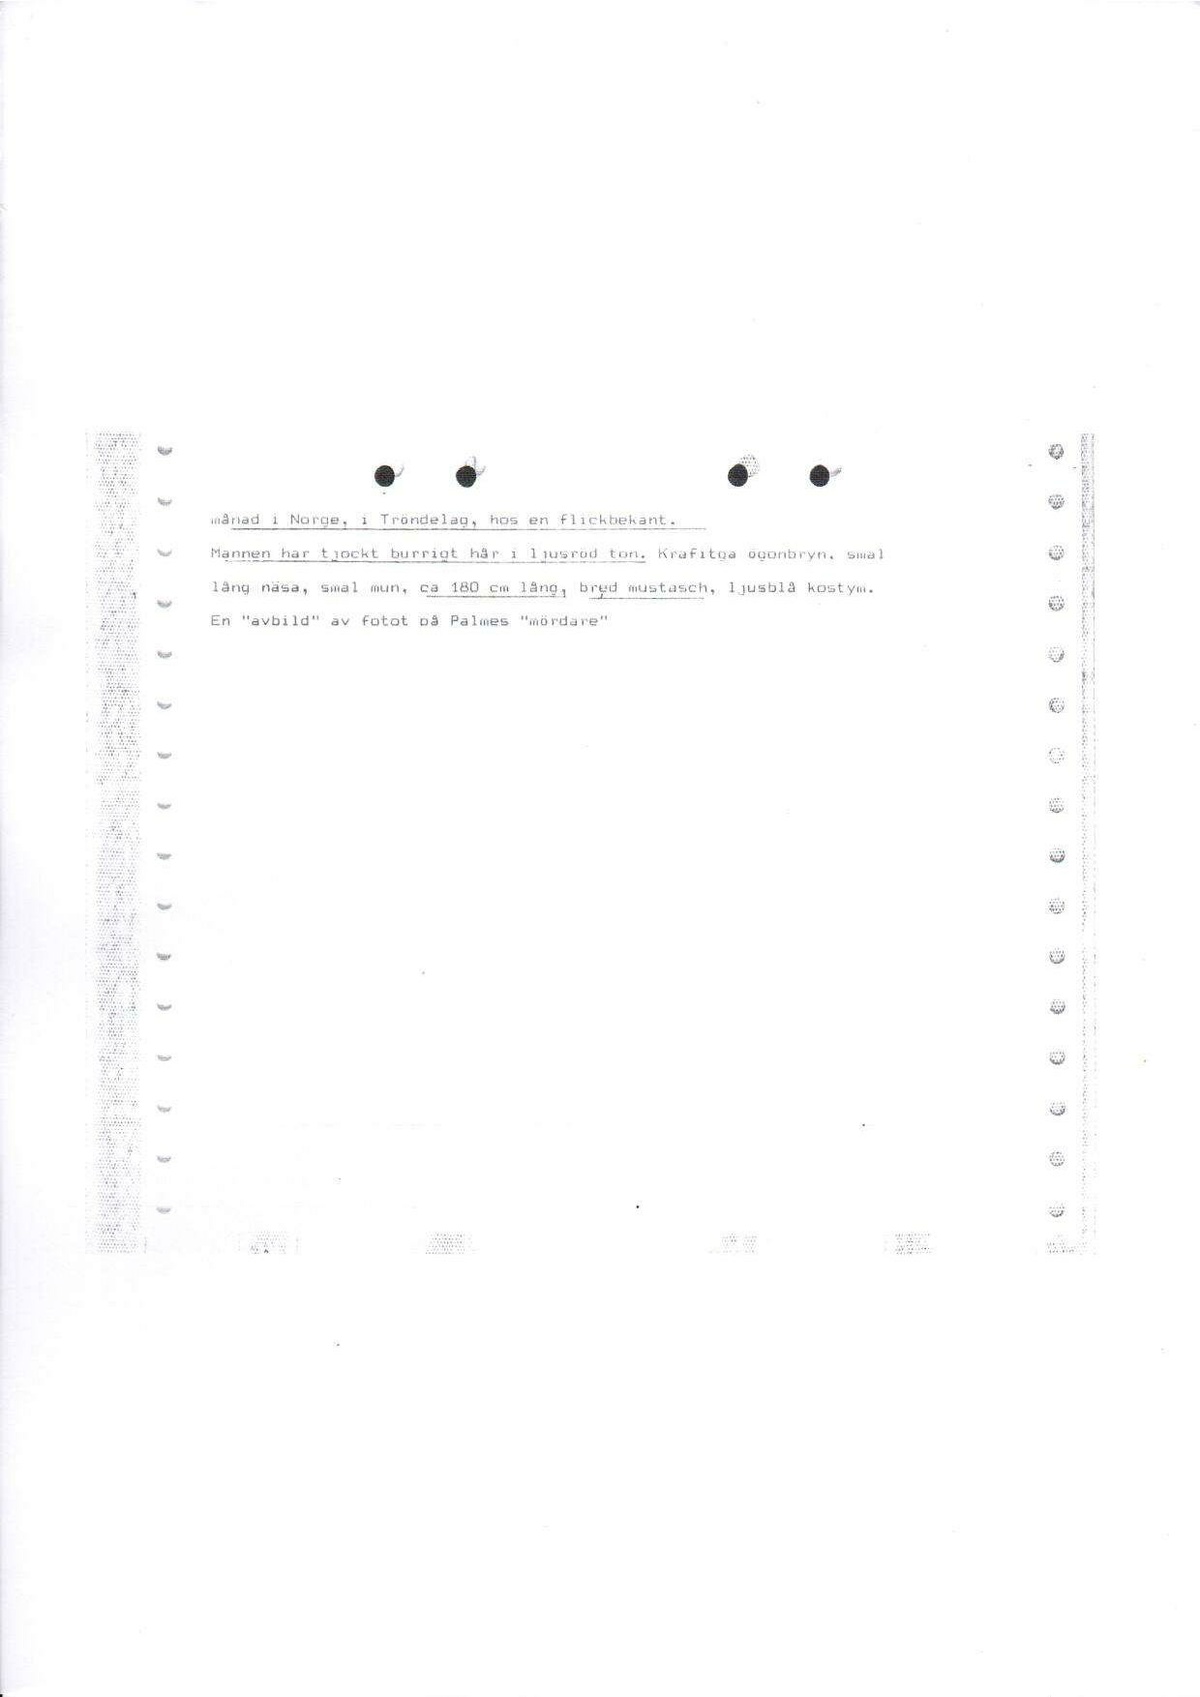 Pol-1986-03-29 0430 D2957-00 Erkännanden Palmemordet.pdf